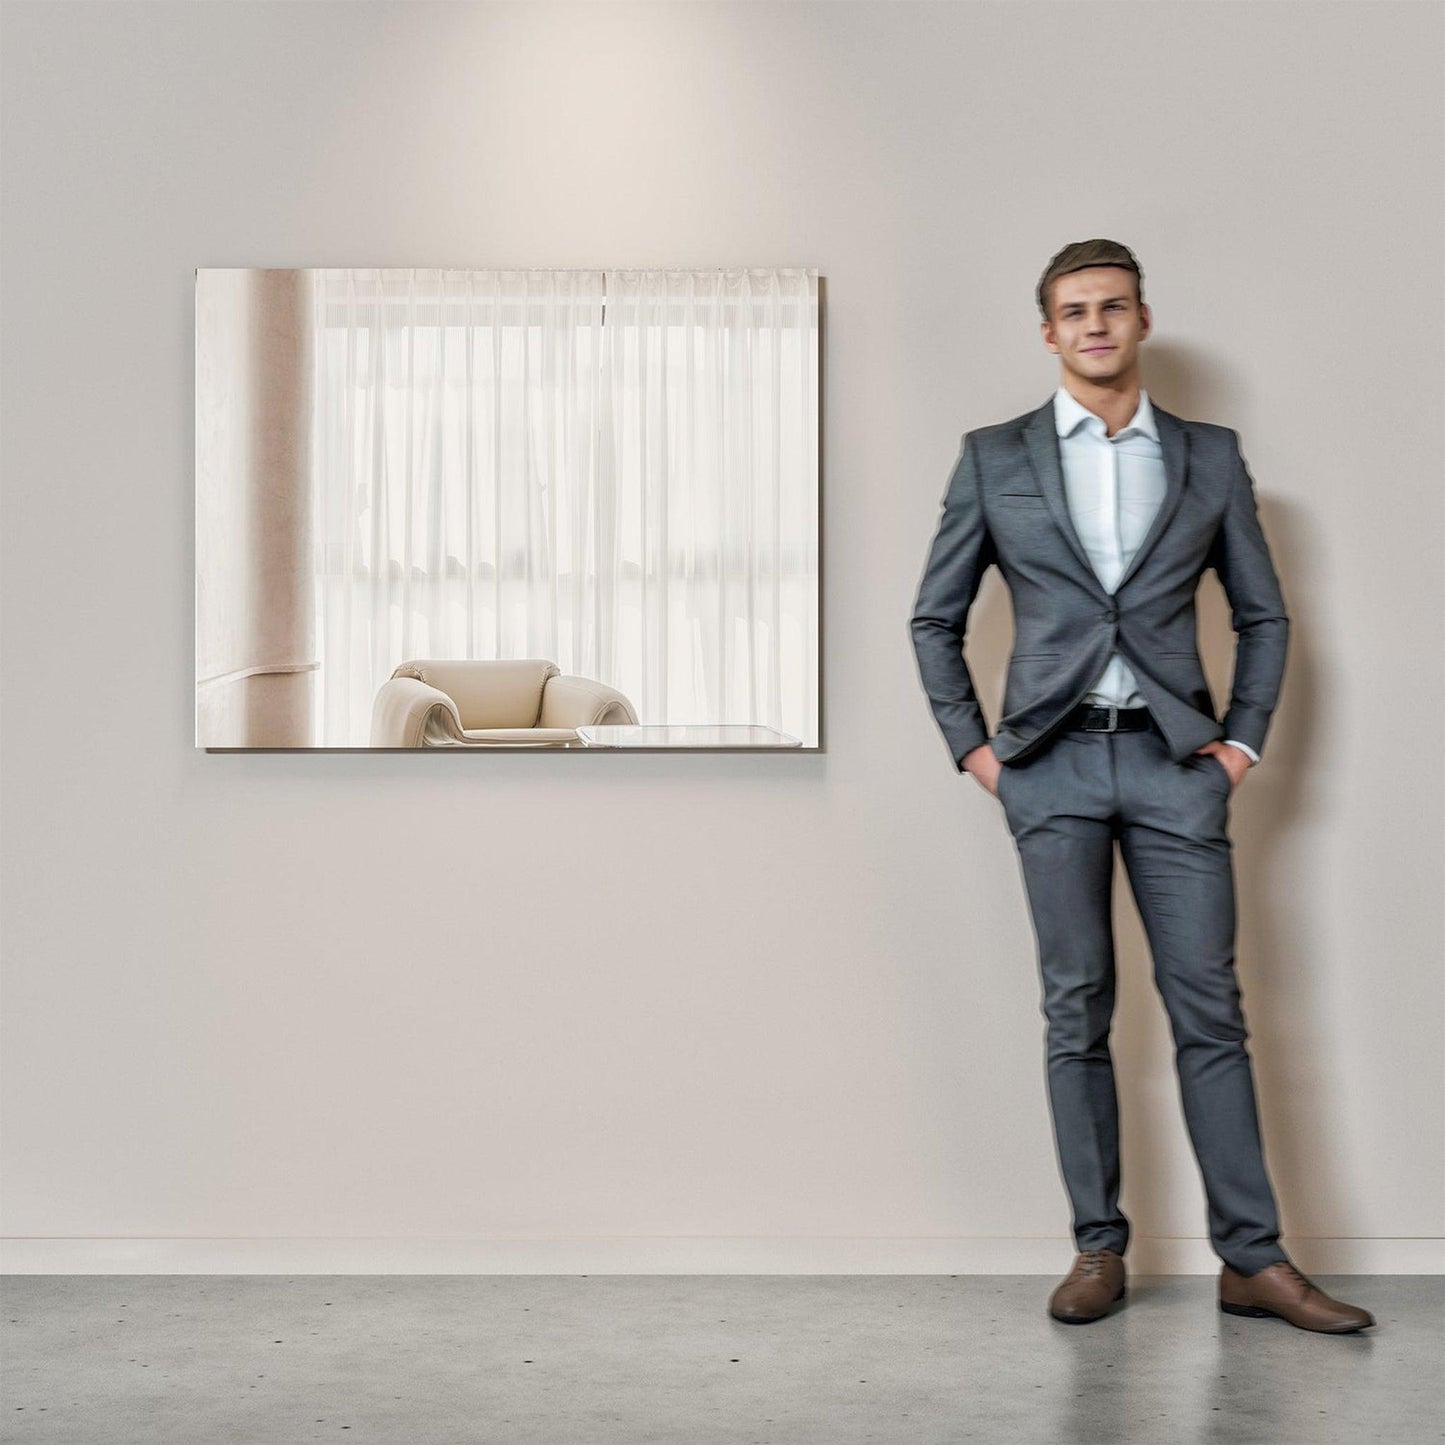 Eviva Sleek 42" x 30" Frameless Bathroom Wall-Mounted Mirror